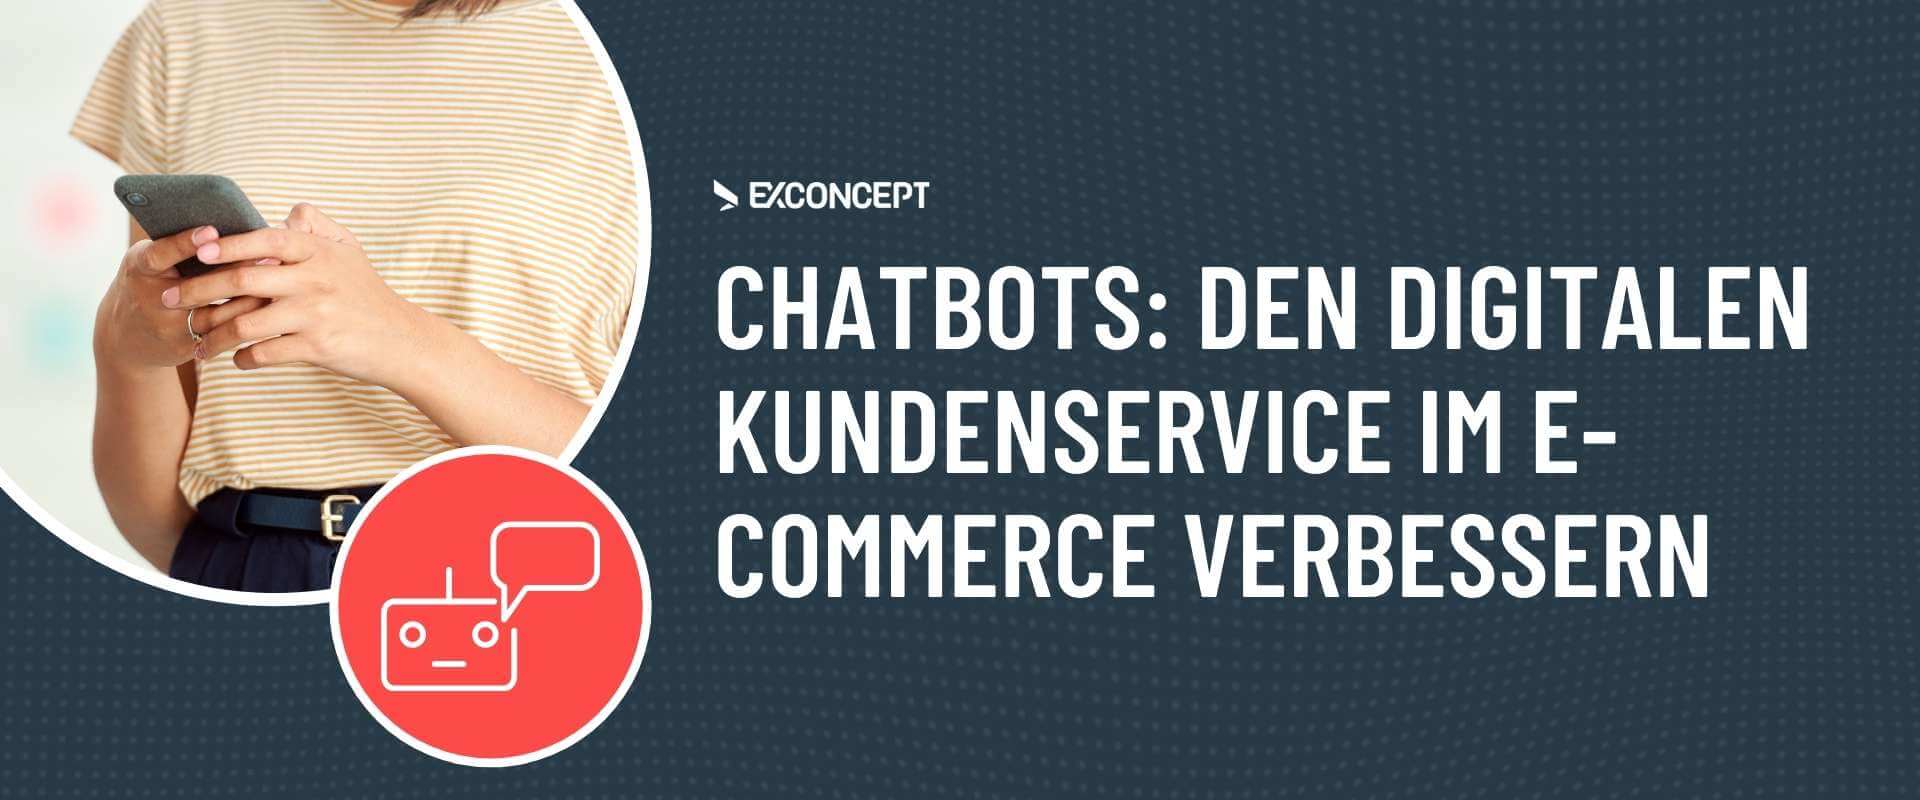 Chatbots Digitaler Kundenservice EXCONCEPT